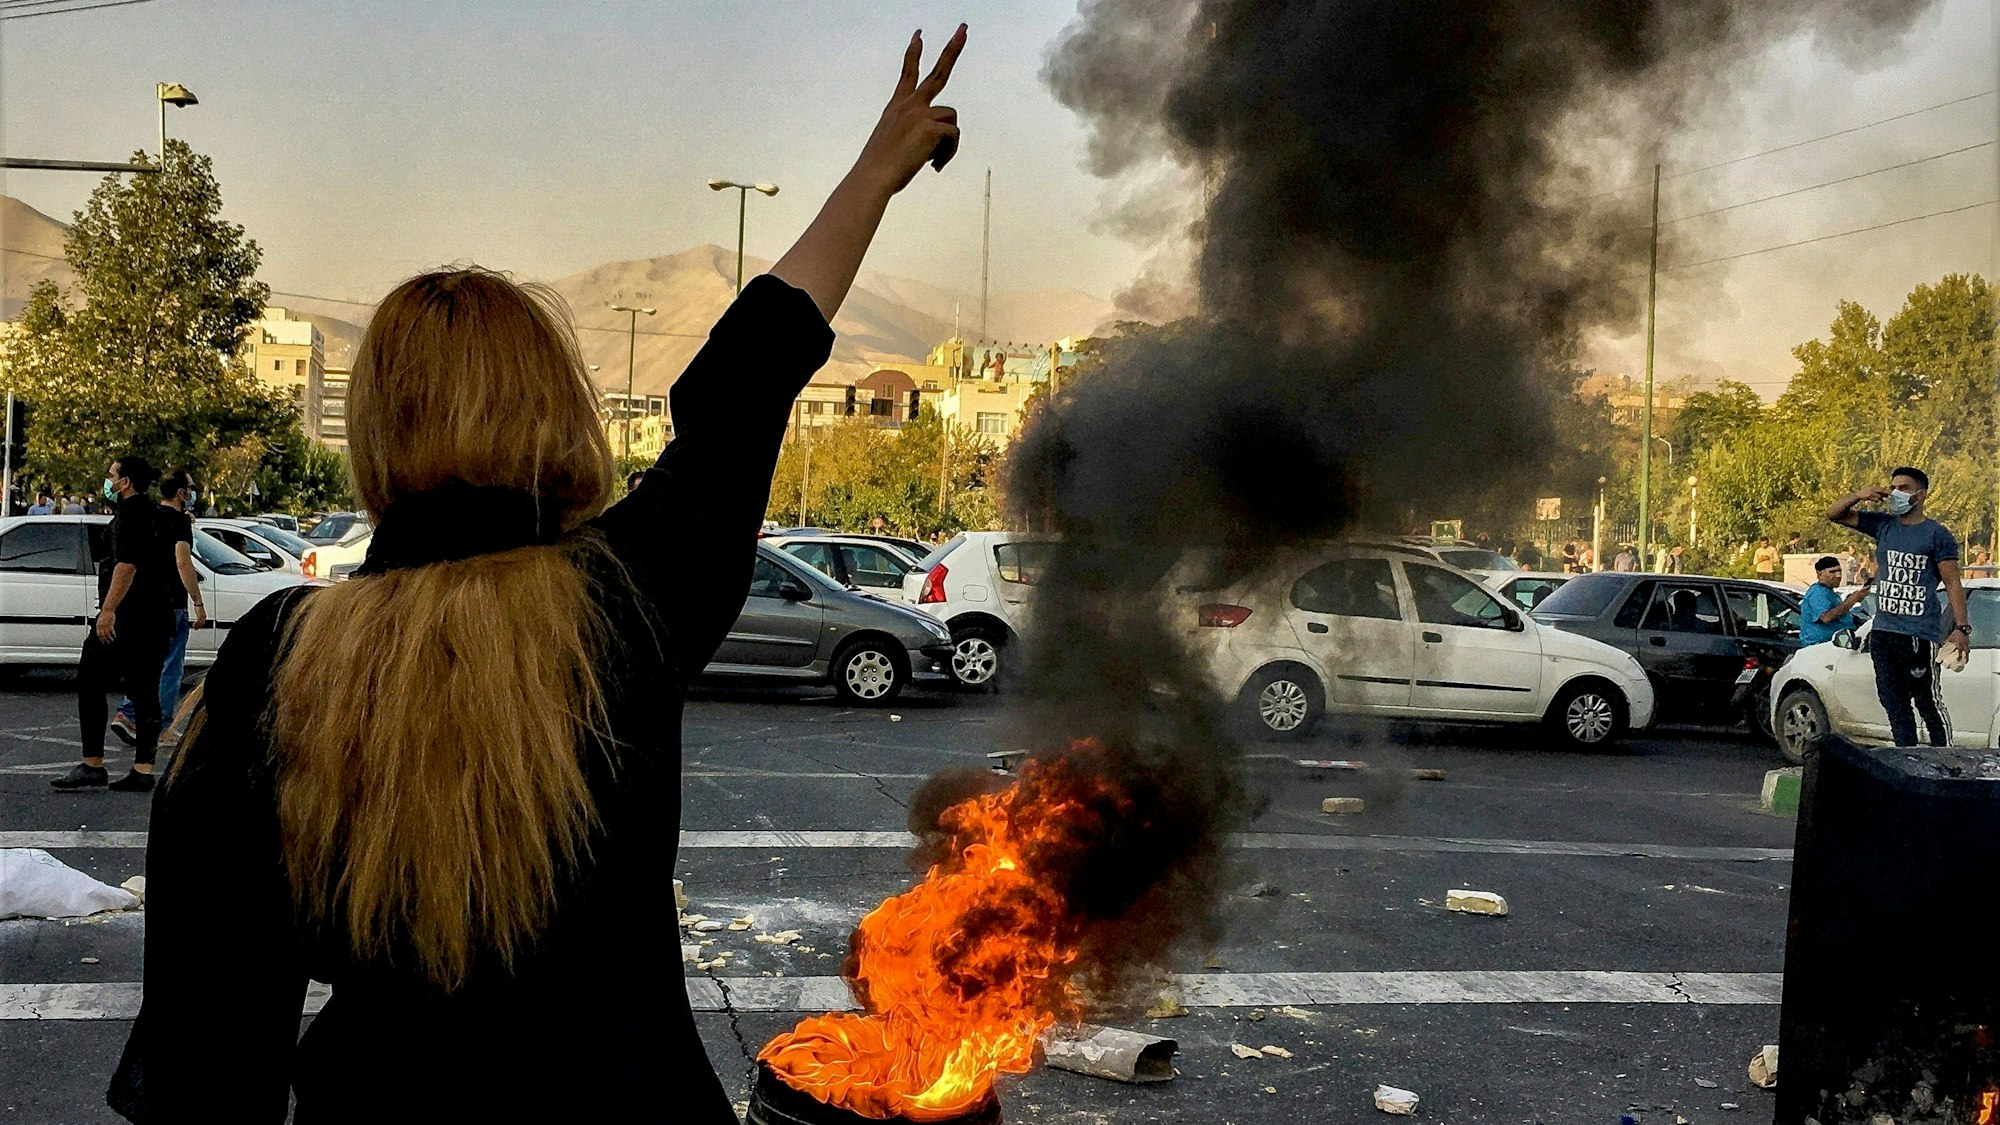 Eine Person mit langen Haaren steht vor einem brennenden Autoreifen und zeigt mit ihrer Hand das Victory-Zeichen.